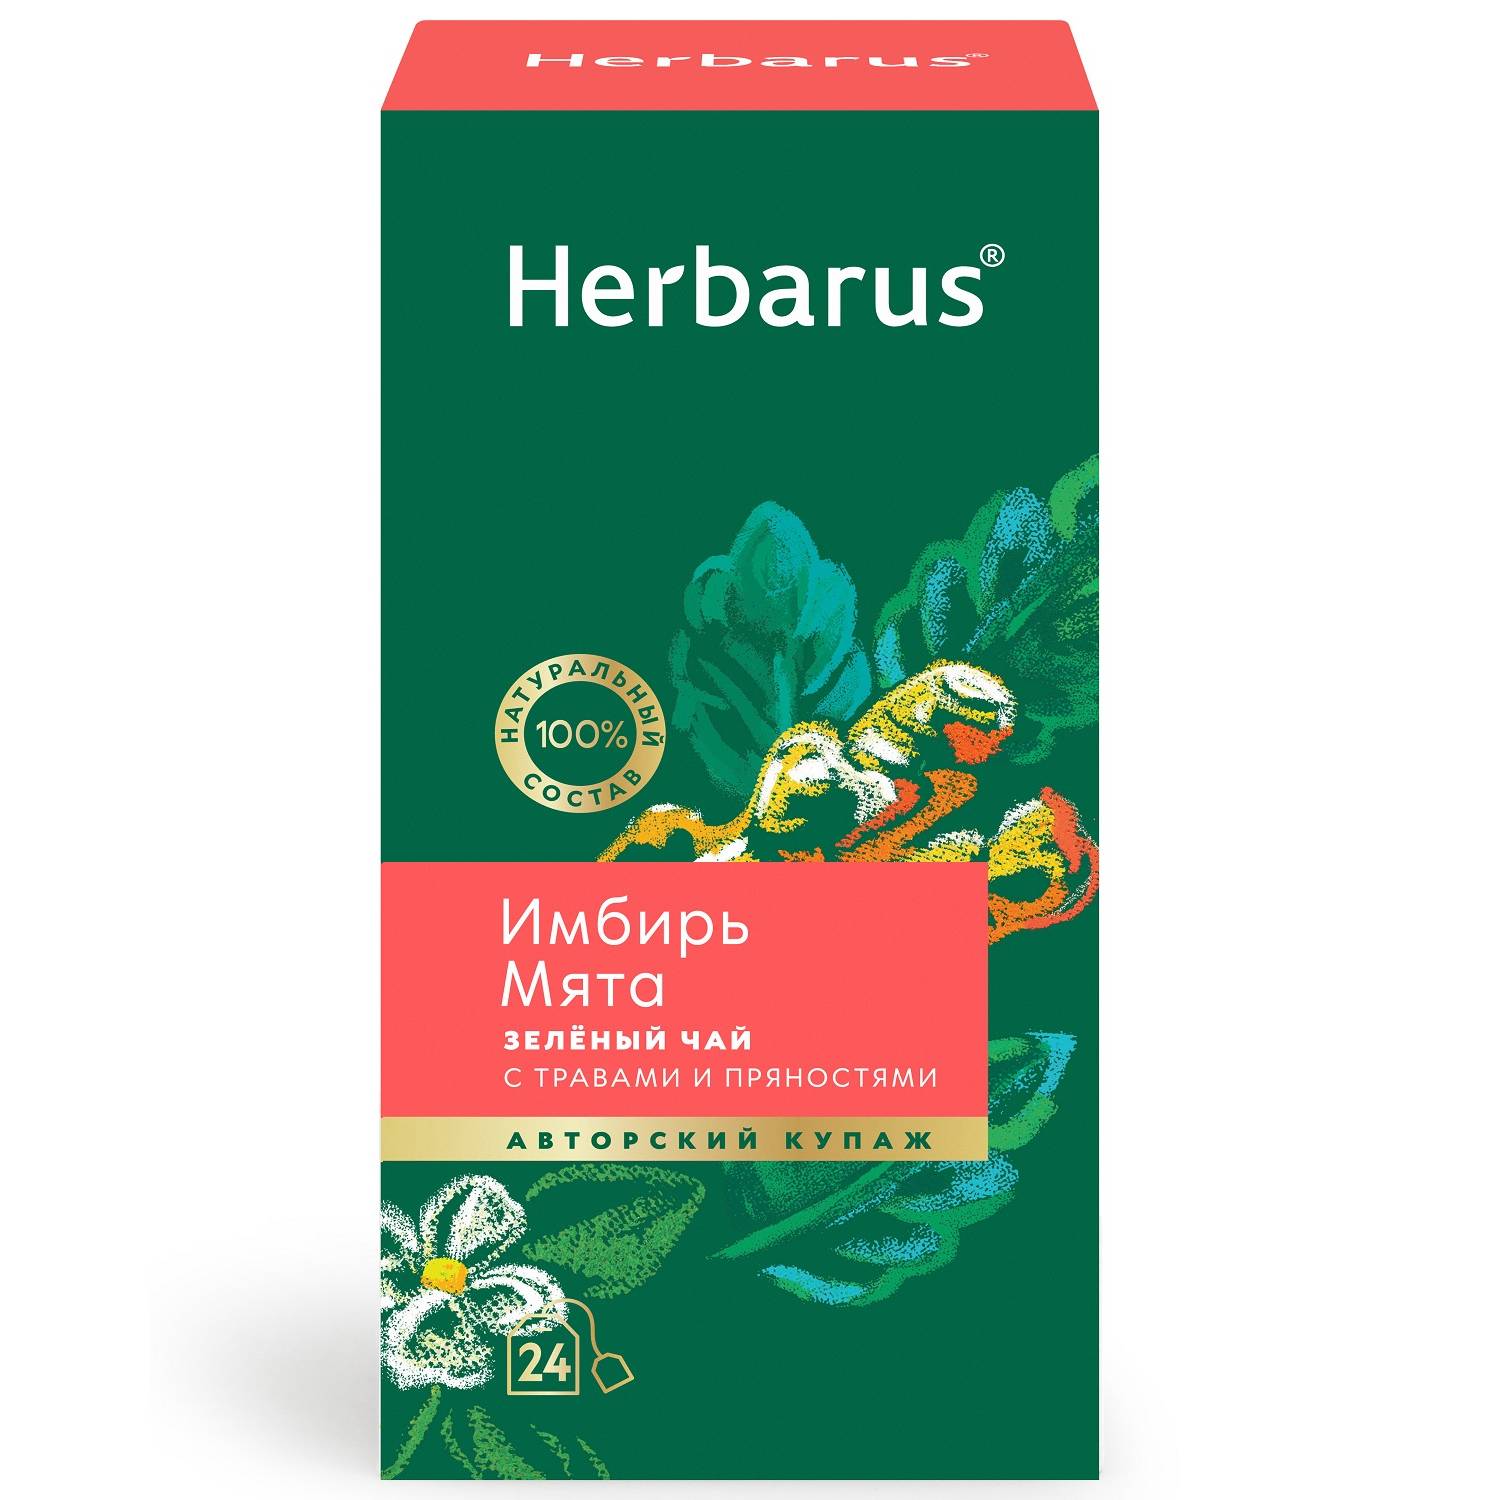 Herbarus Зеленый чай с травами и пряностями Имбирь и мята, 24 пакетика (Herbarus, Чай с добавками) herbarus чай с добавками ассорти чай черный 24 х 2 г herbarus чай с добавками